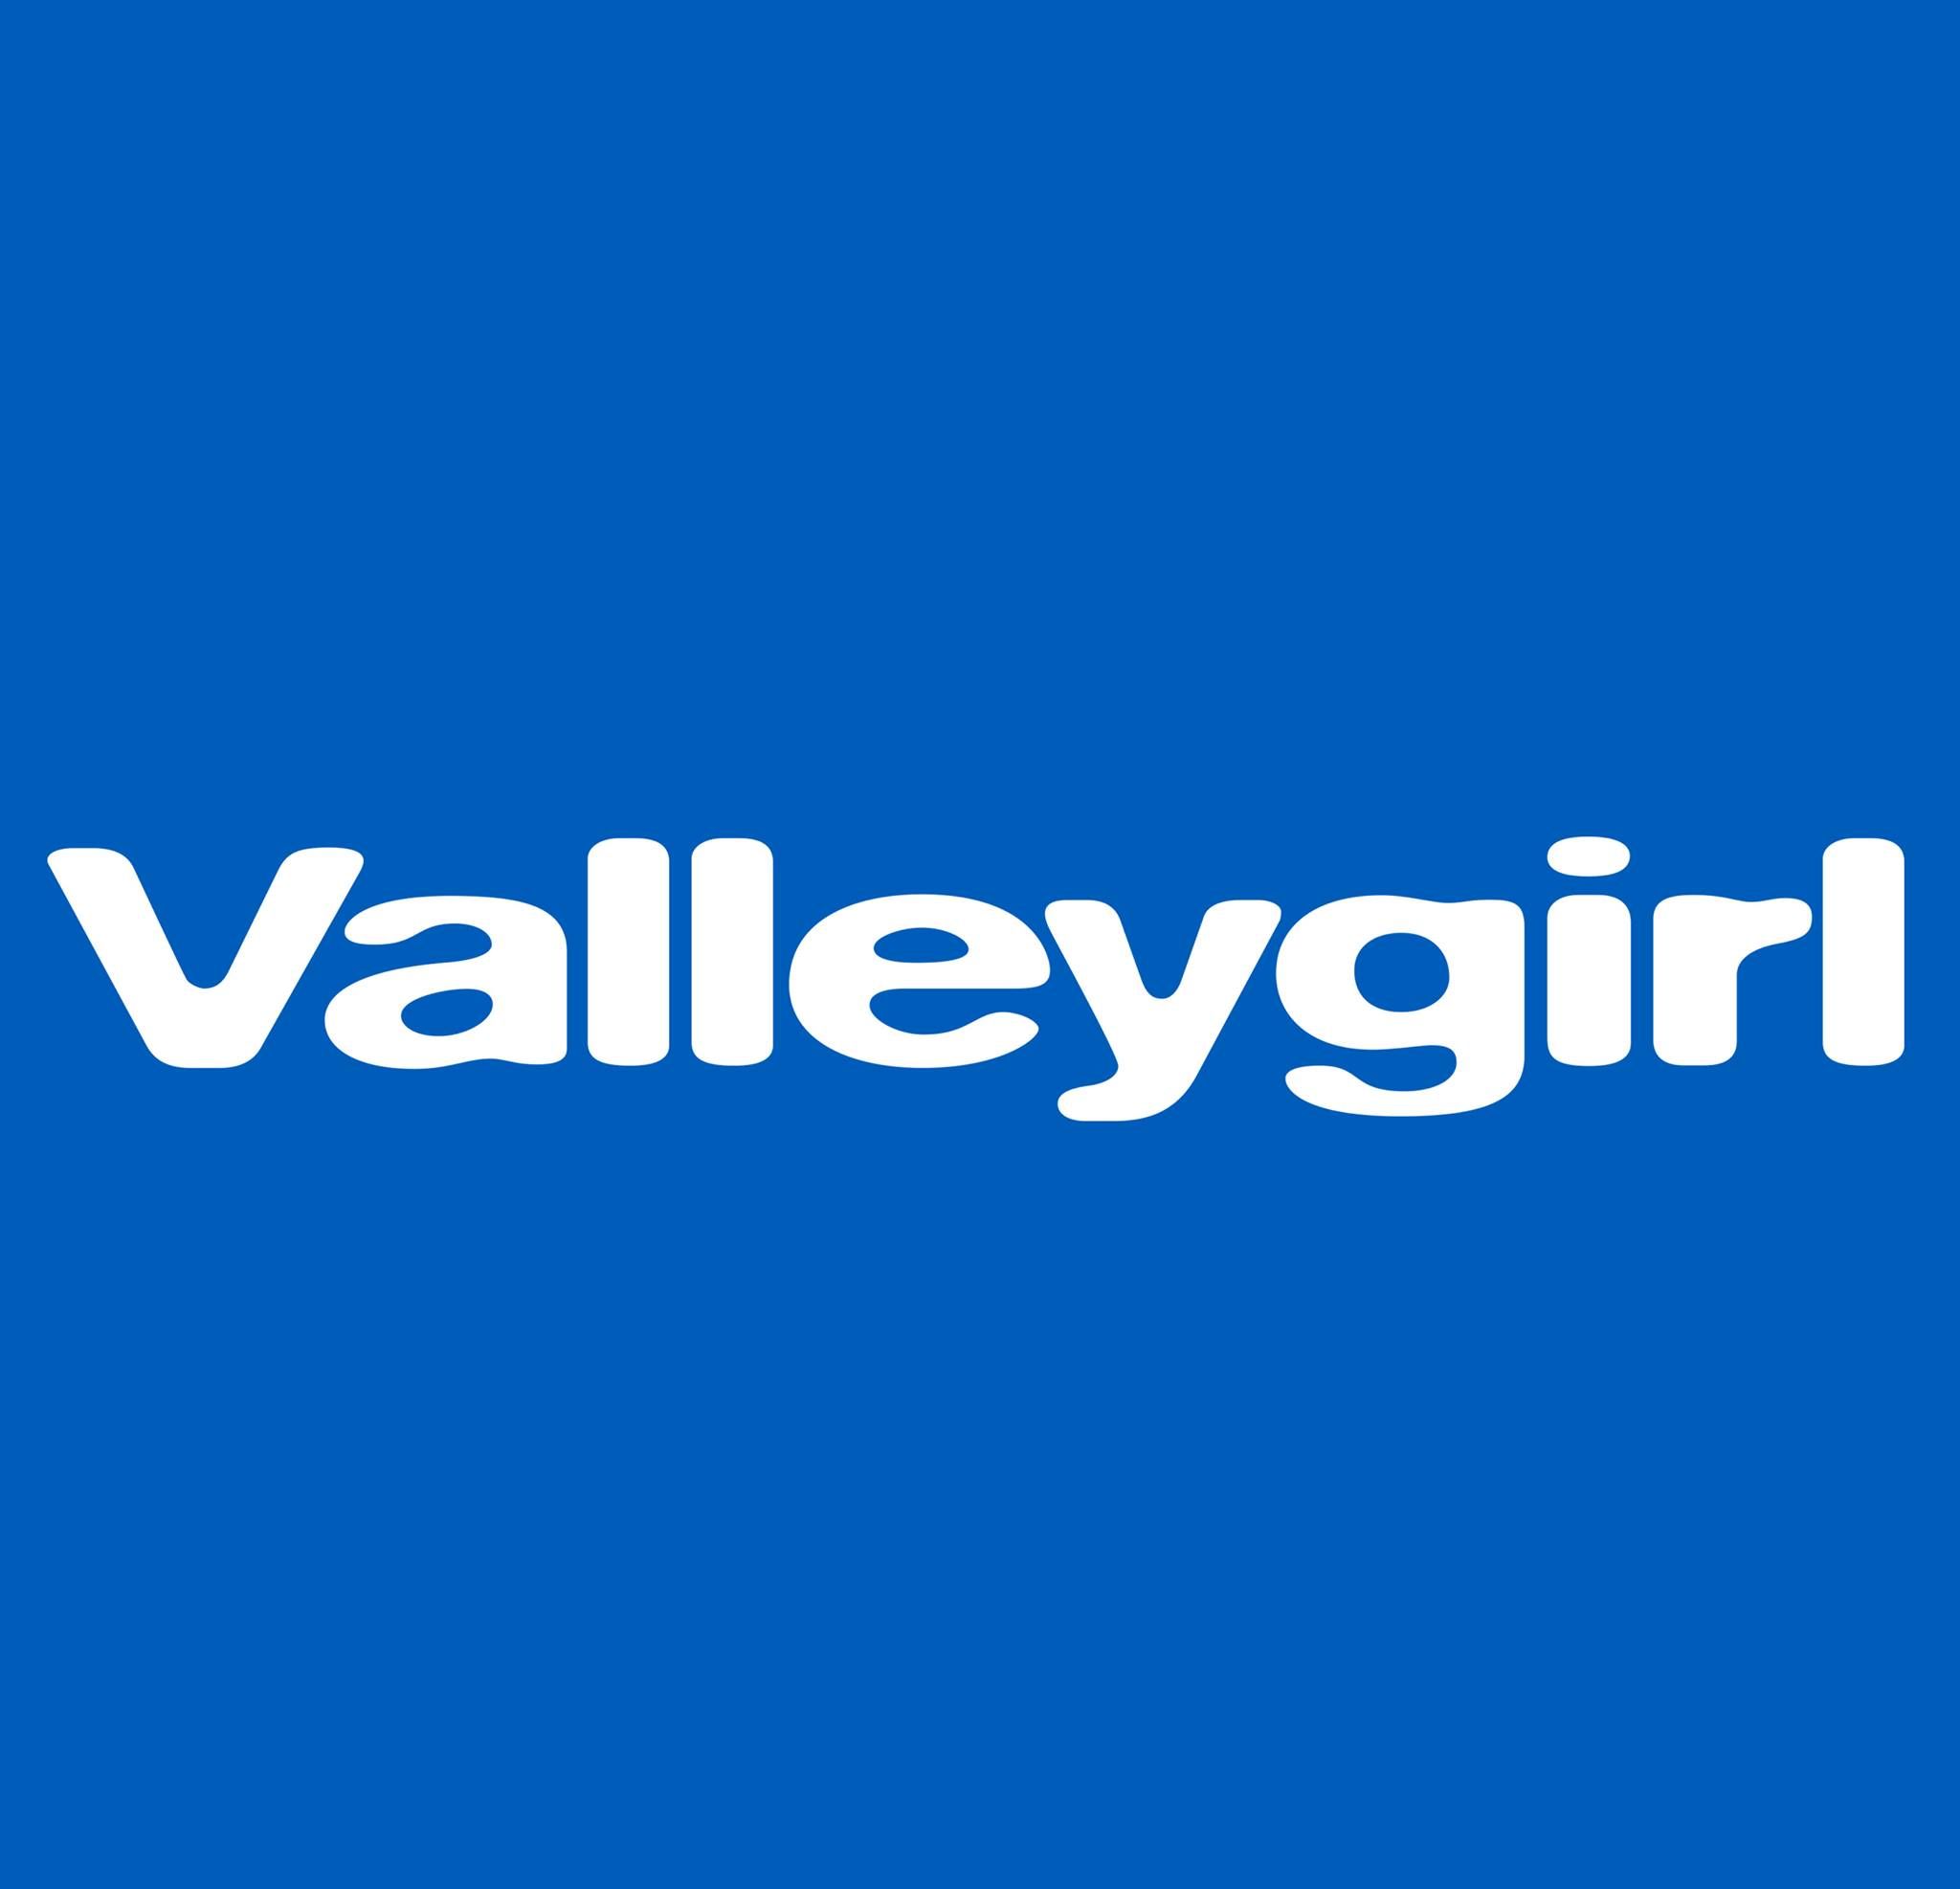 Valleygirl